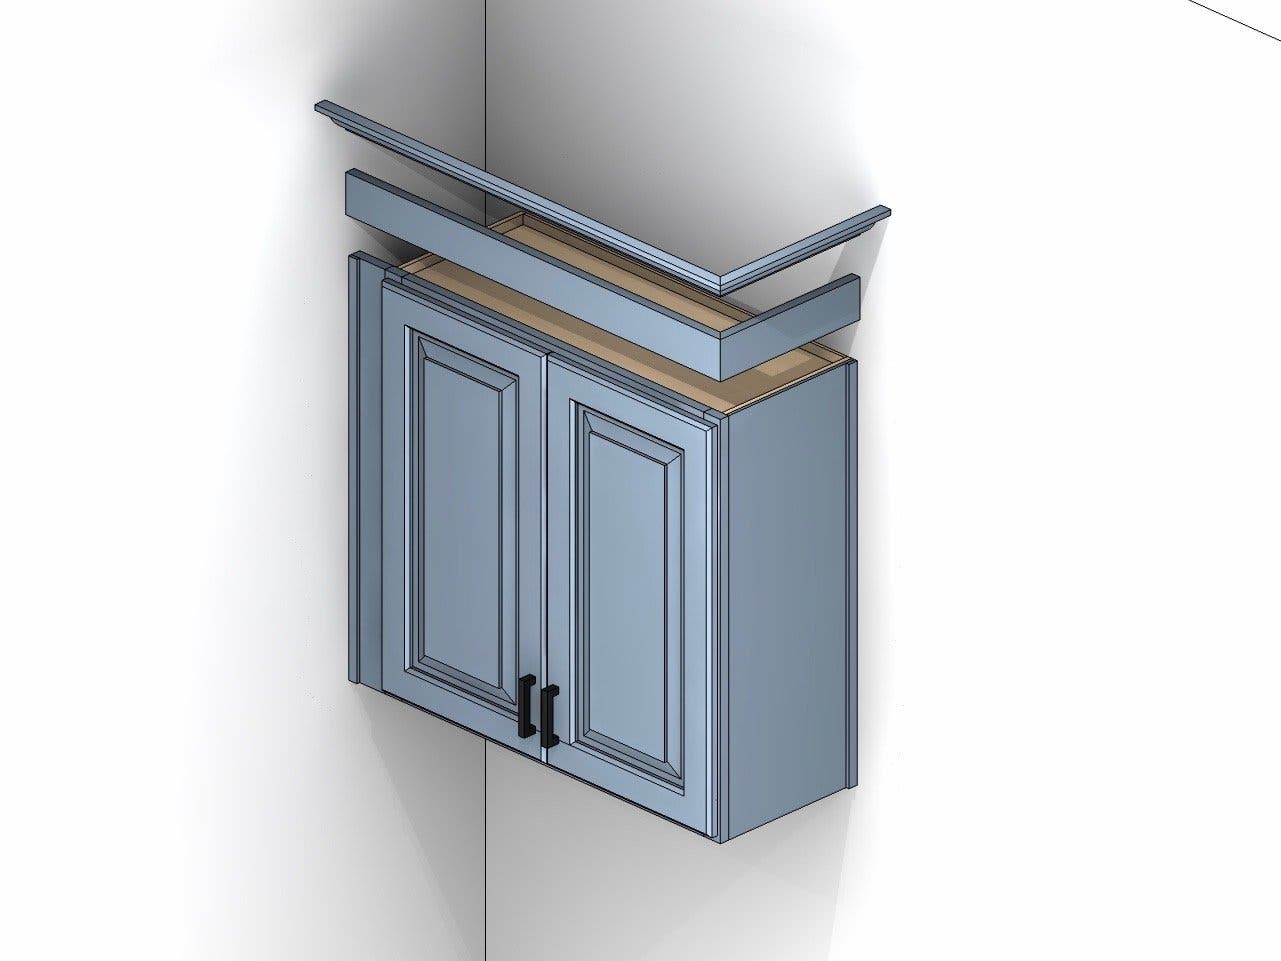 cabinet illustration showing starter/riser molding